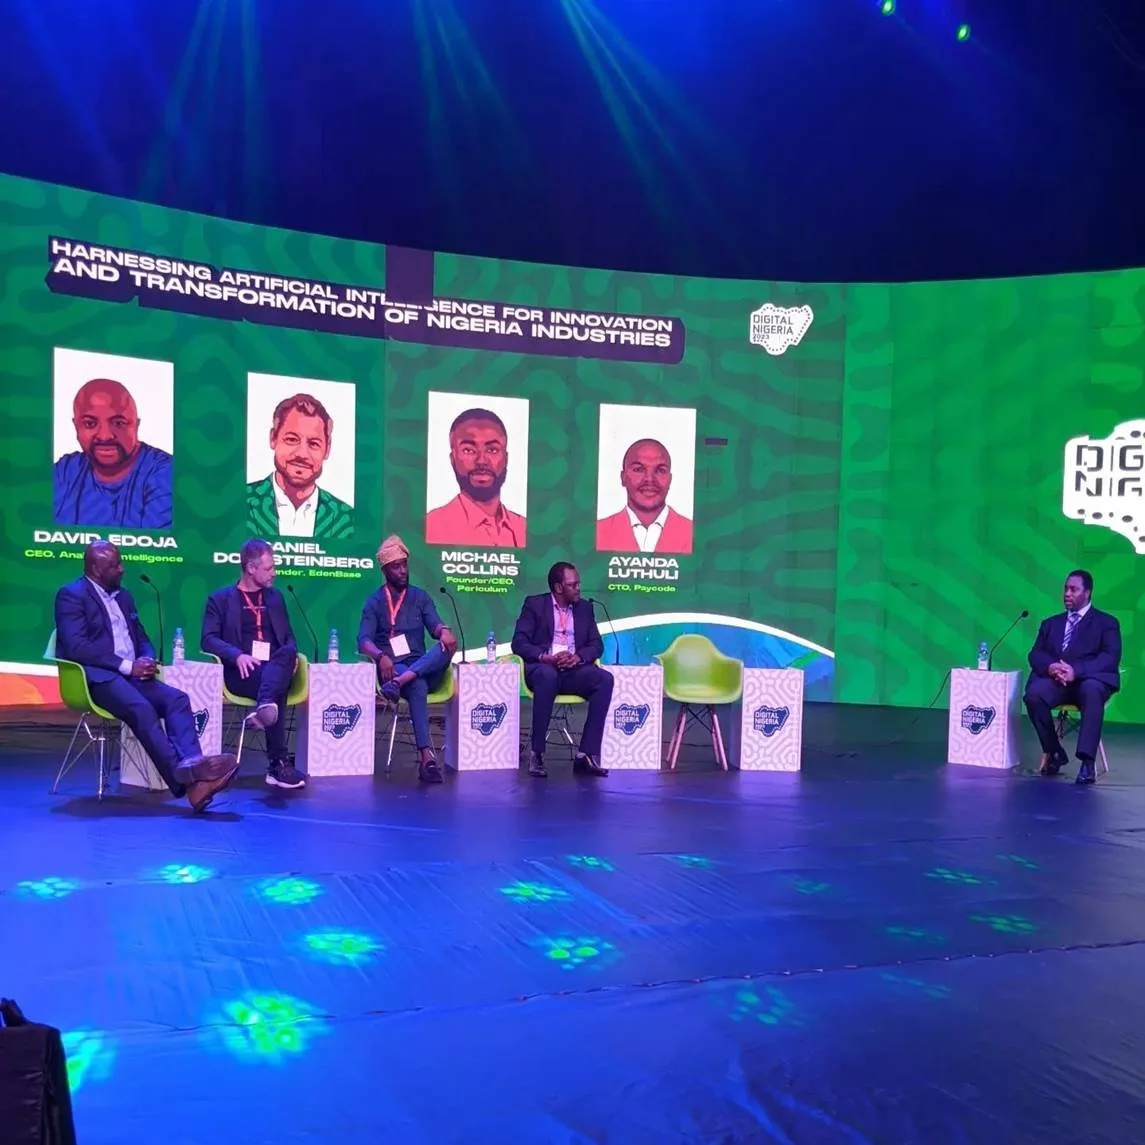 Digital Nigeria speakers on stage